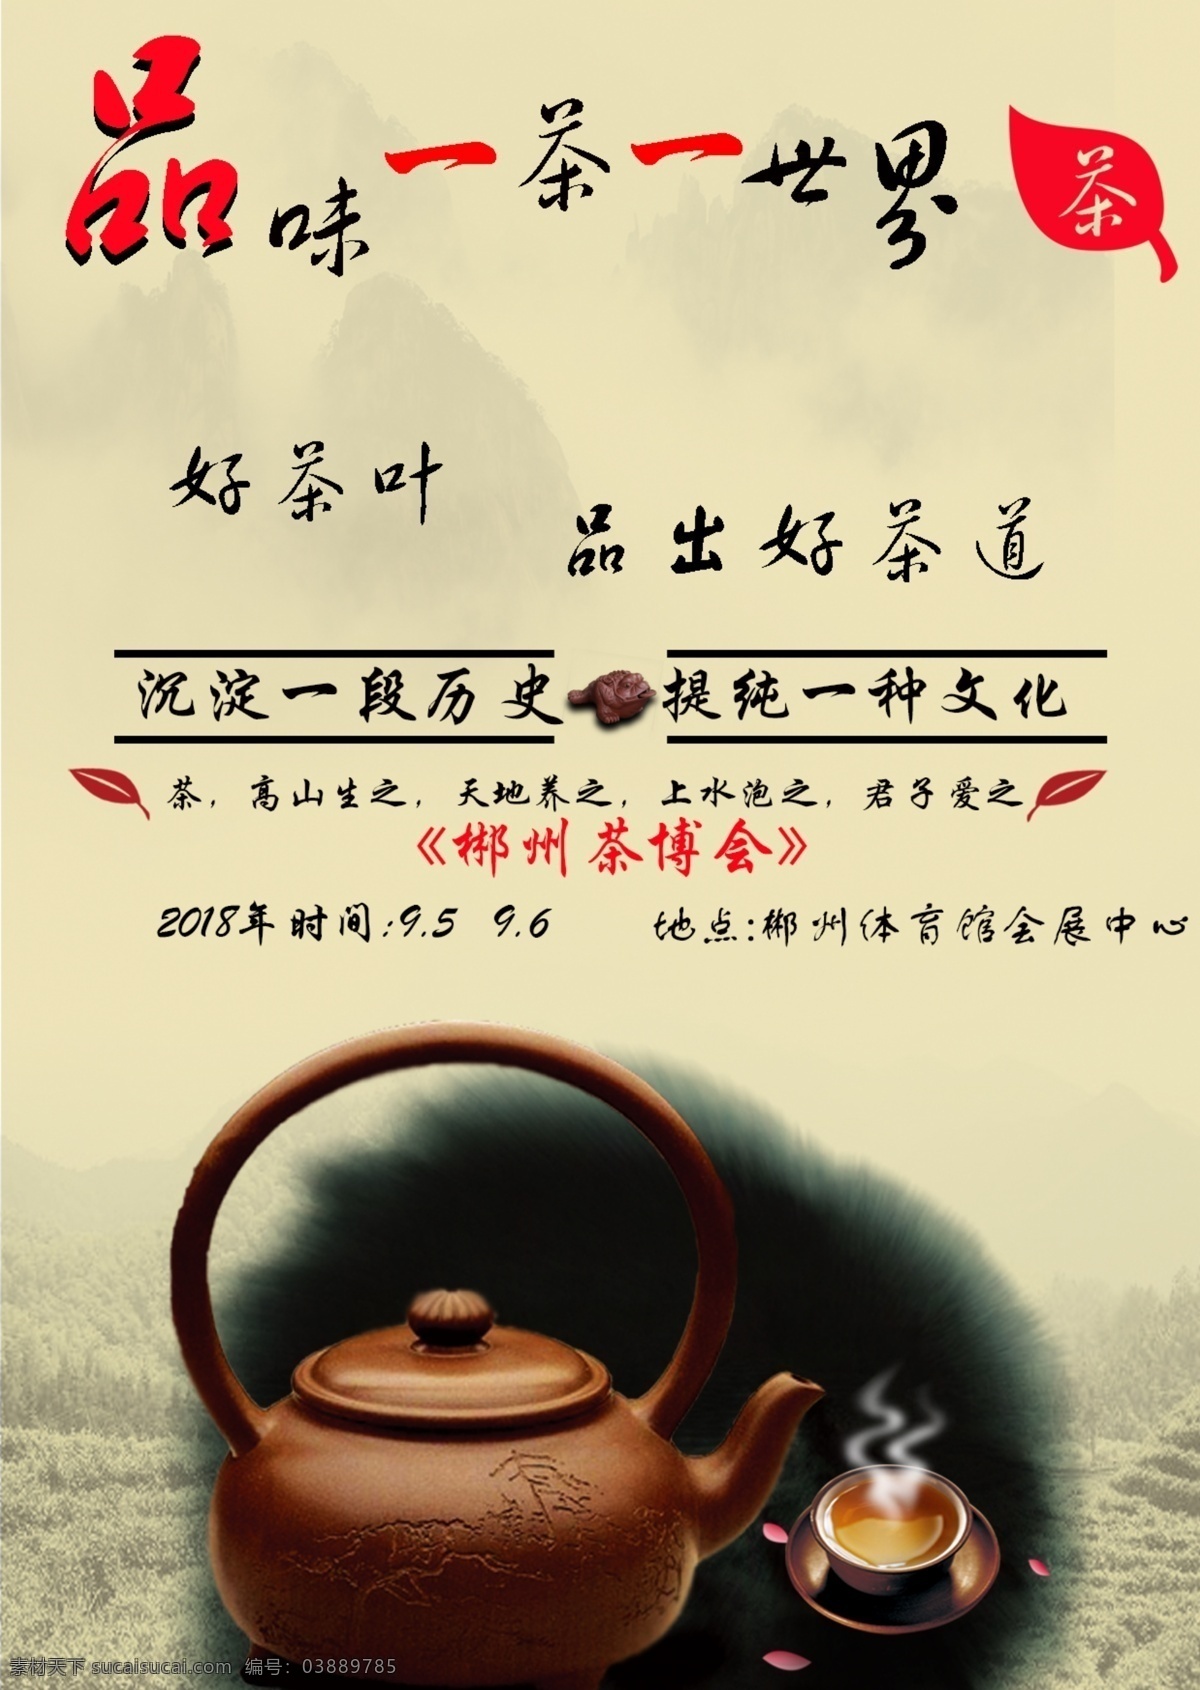 一茶一世界 茶 茶叶 茶文化 茶海报 茶图片